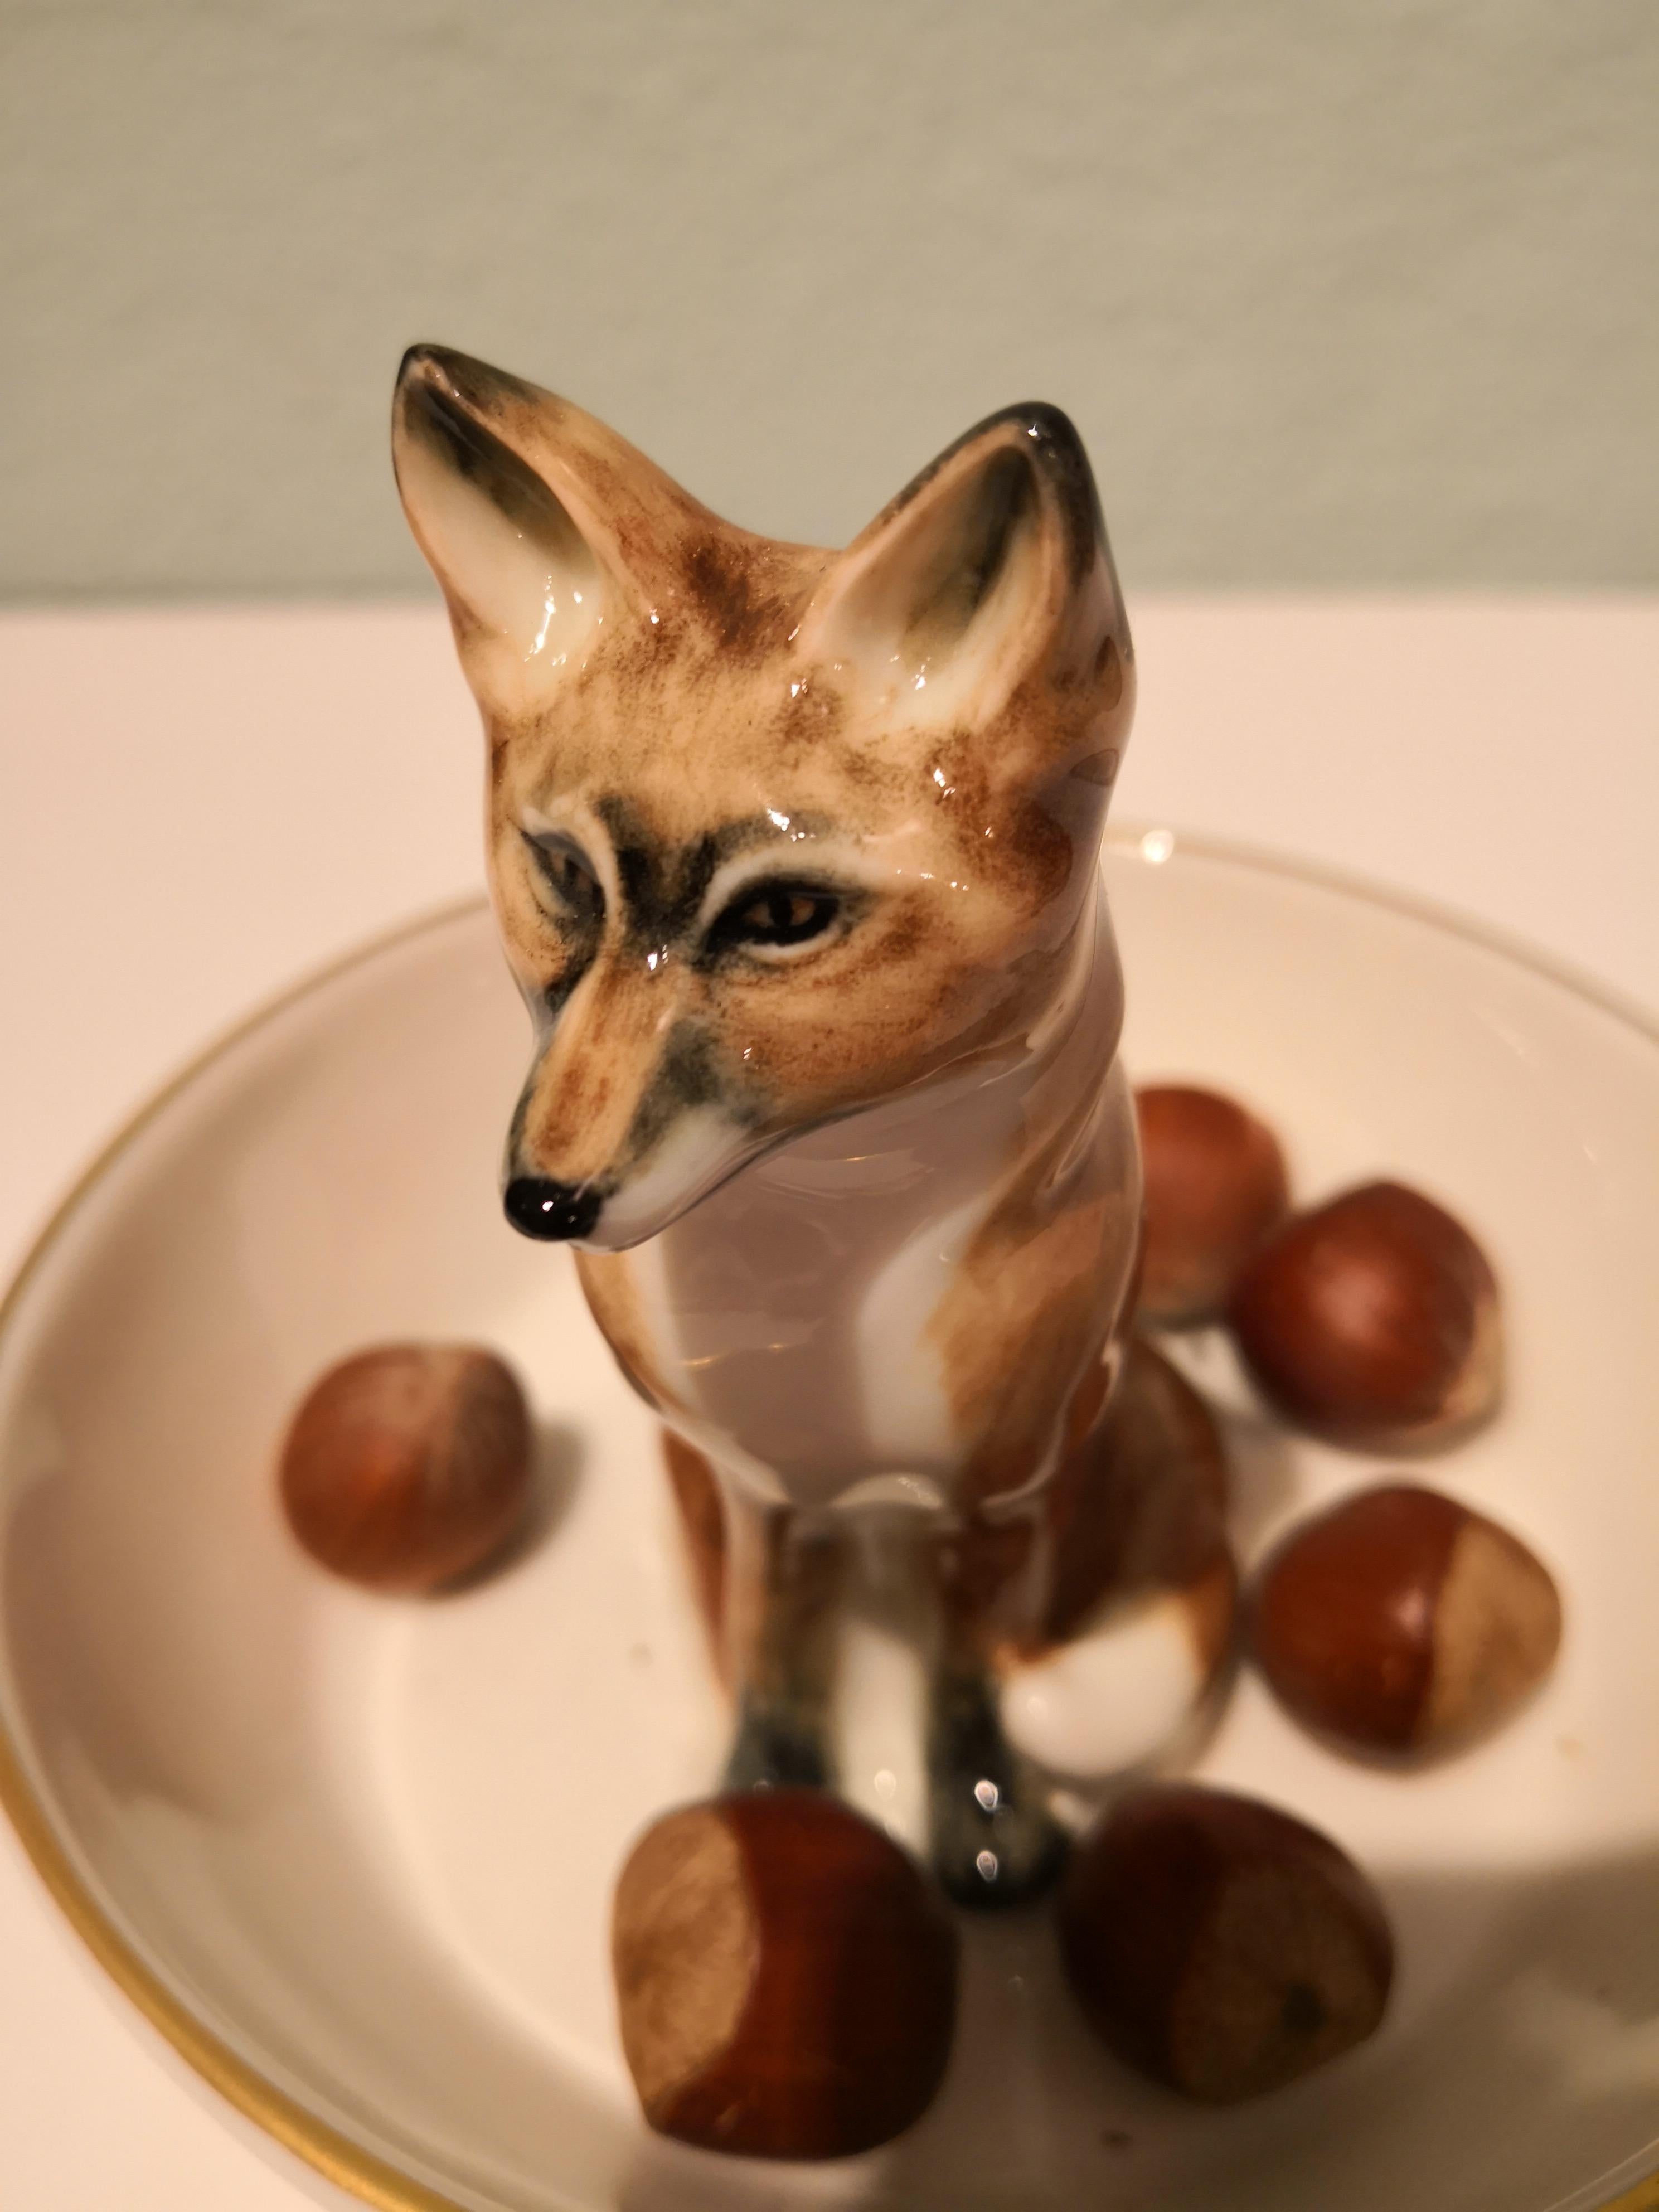 Vollständig handgefertigte Porzellanschale mit einer freihändig gemalten naturalistischen Fuchsfigur in Brauntönen. Der Fuchs sitzt in der Mitte der Schale, um Nüsse oder Süßigkeiten für einen tollen Schwarzwälder Einrichtungsstil zu dekorieren.